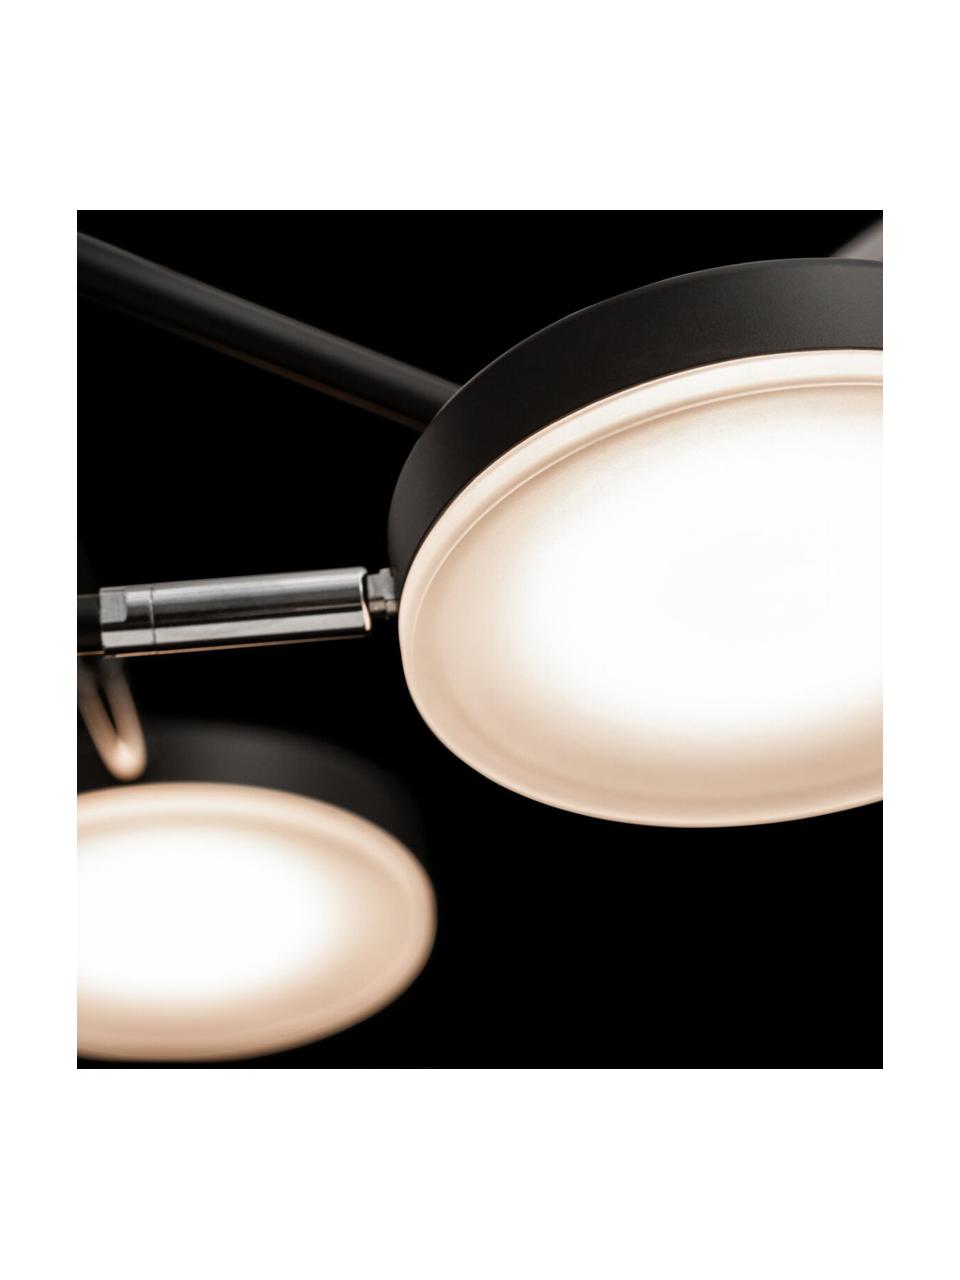 Lampa wisząca LED Fad, Stelaż: metal, akryl, powlekane, Czarny, odcienie srebrnego, beżowy, S 89 x W 62 cm